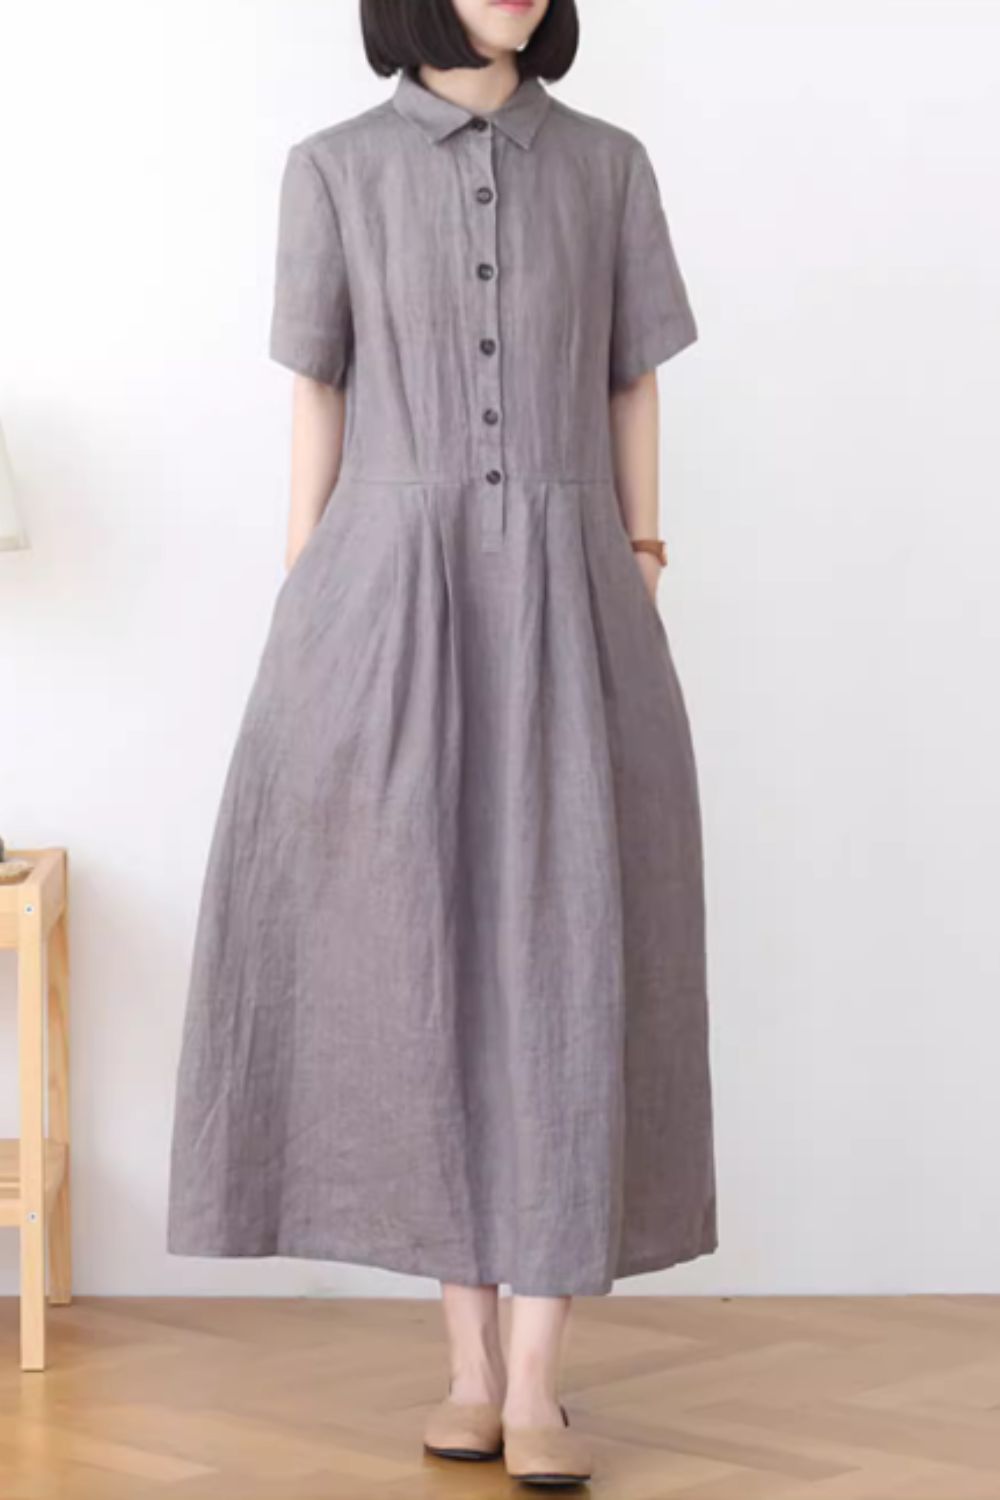 Gray summer linen shirt dress with pockets 4835